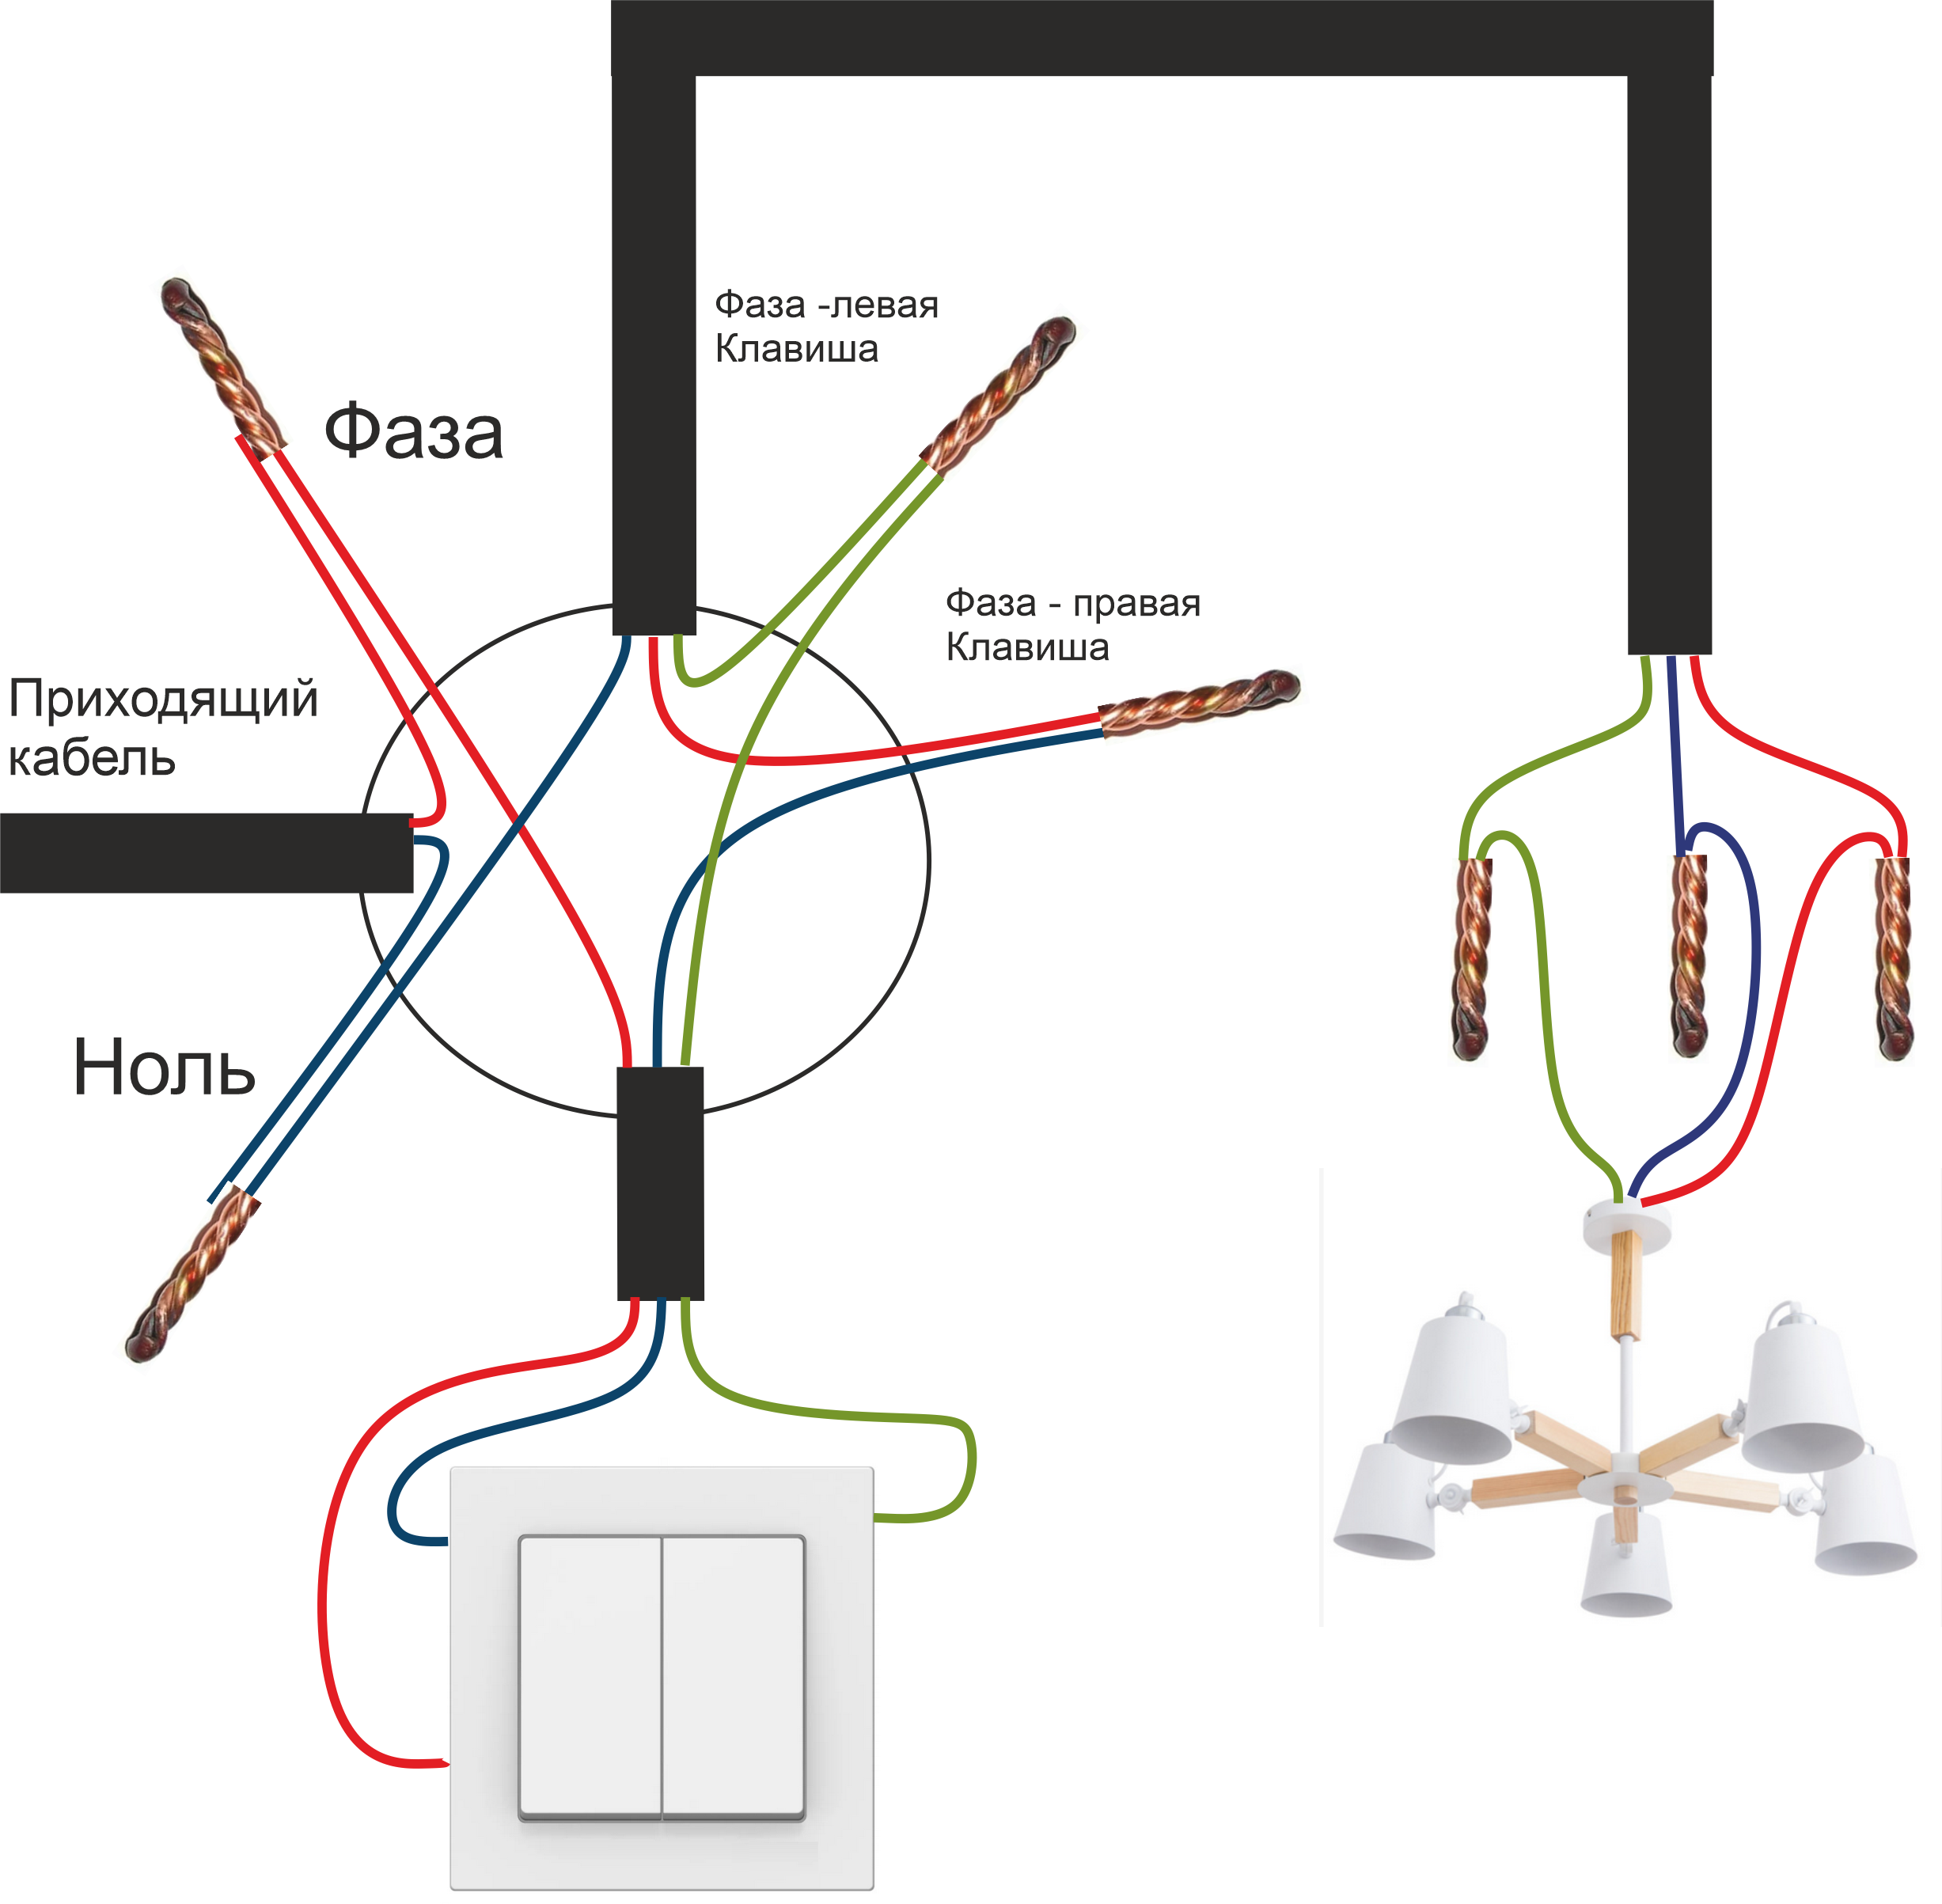 Как подключить лампу двойным выключателем. Схема соединения проводов двухклавишного выключателя. Схема подключения двухклавишного выключателя на 2 лампочки. Схема подсоединения двухклавишного выключателя к двум лампочкам. Схема подключения двухклавишного выключателя трехжильным кабелем.